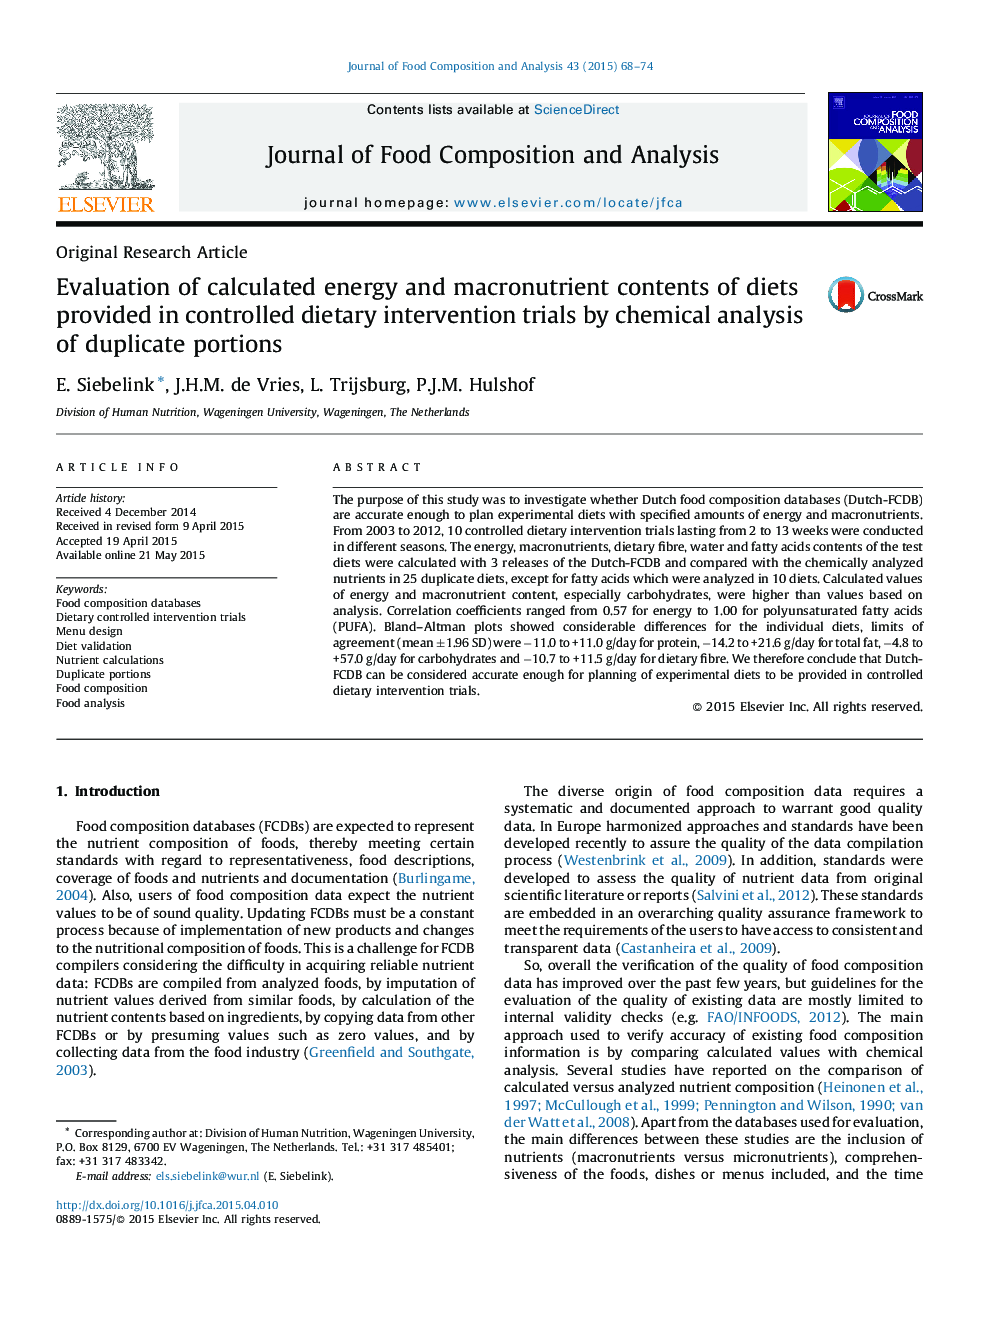 ارزیابی محاسبه انرژی و مقادیر مغذی موجود در رژیم های غذایی که در آزمایش های مداخله ای کنترل شده با رژیم غذایی کنترل شده با استفاده از تجزیه شیمیایی قطعات تکراری 